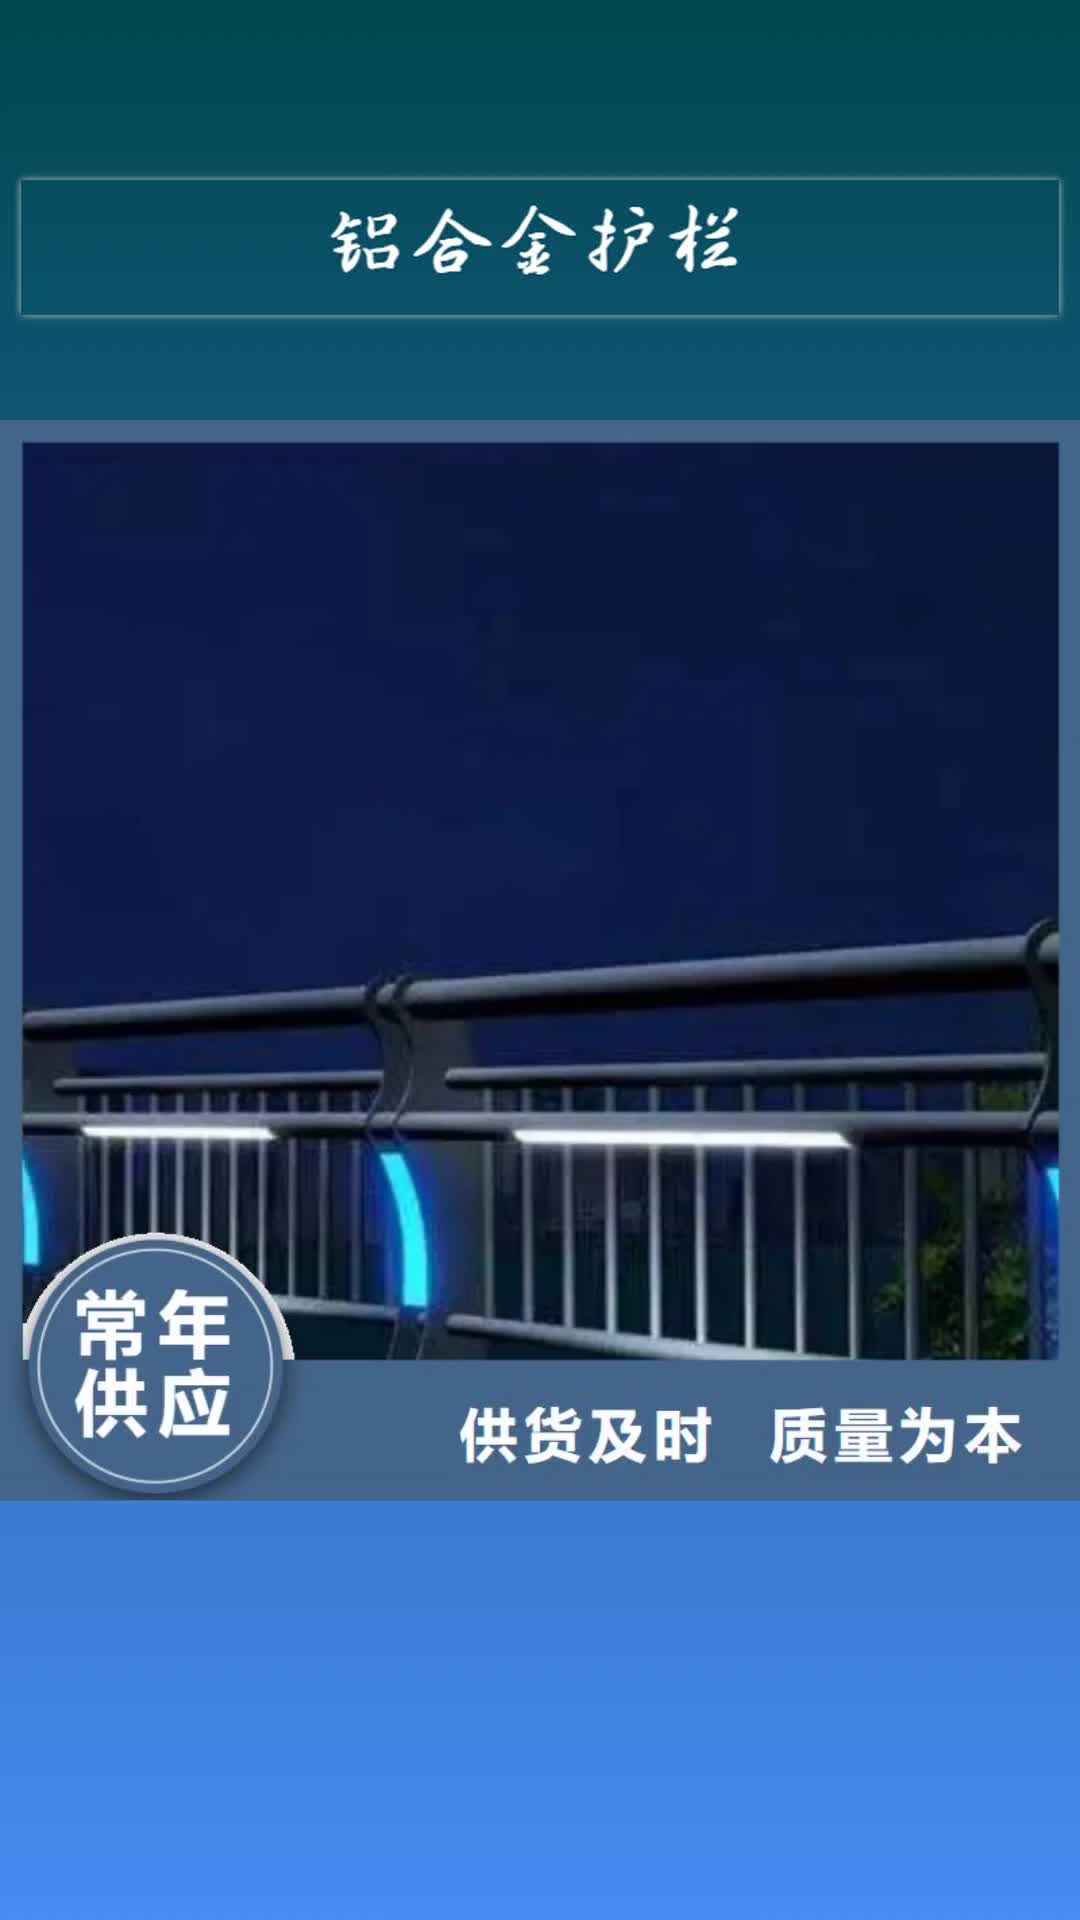 【朝阳 铝合金护栏,不锈钢灯光护栏品质做服务】